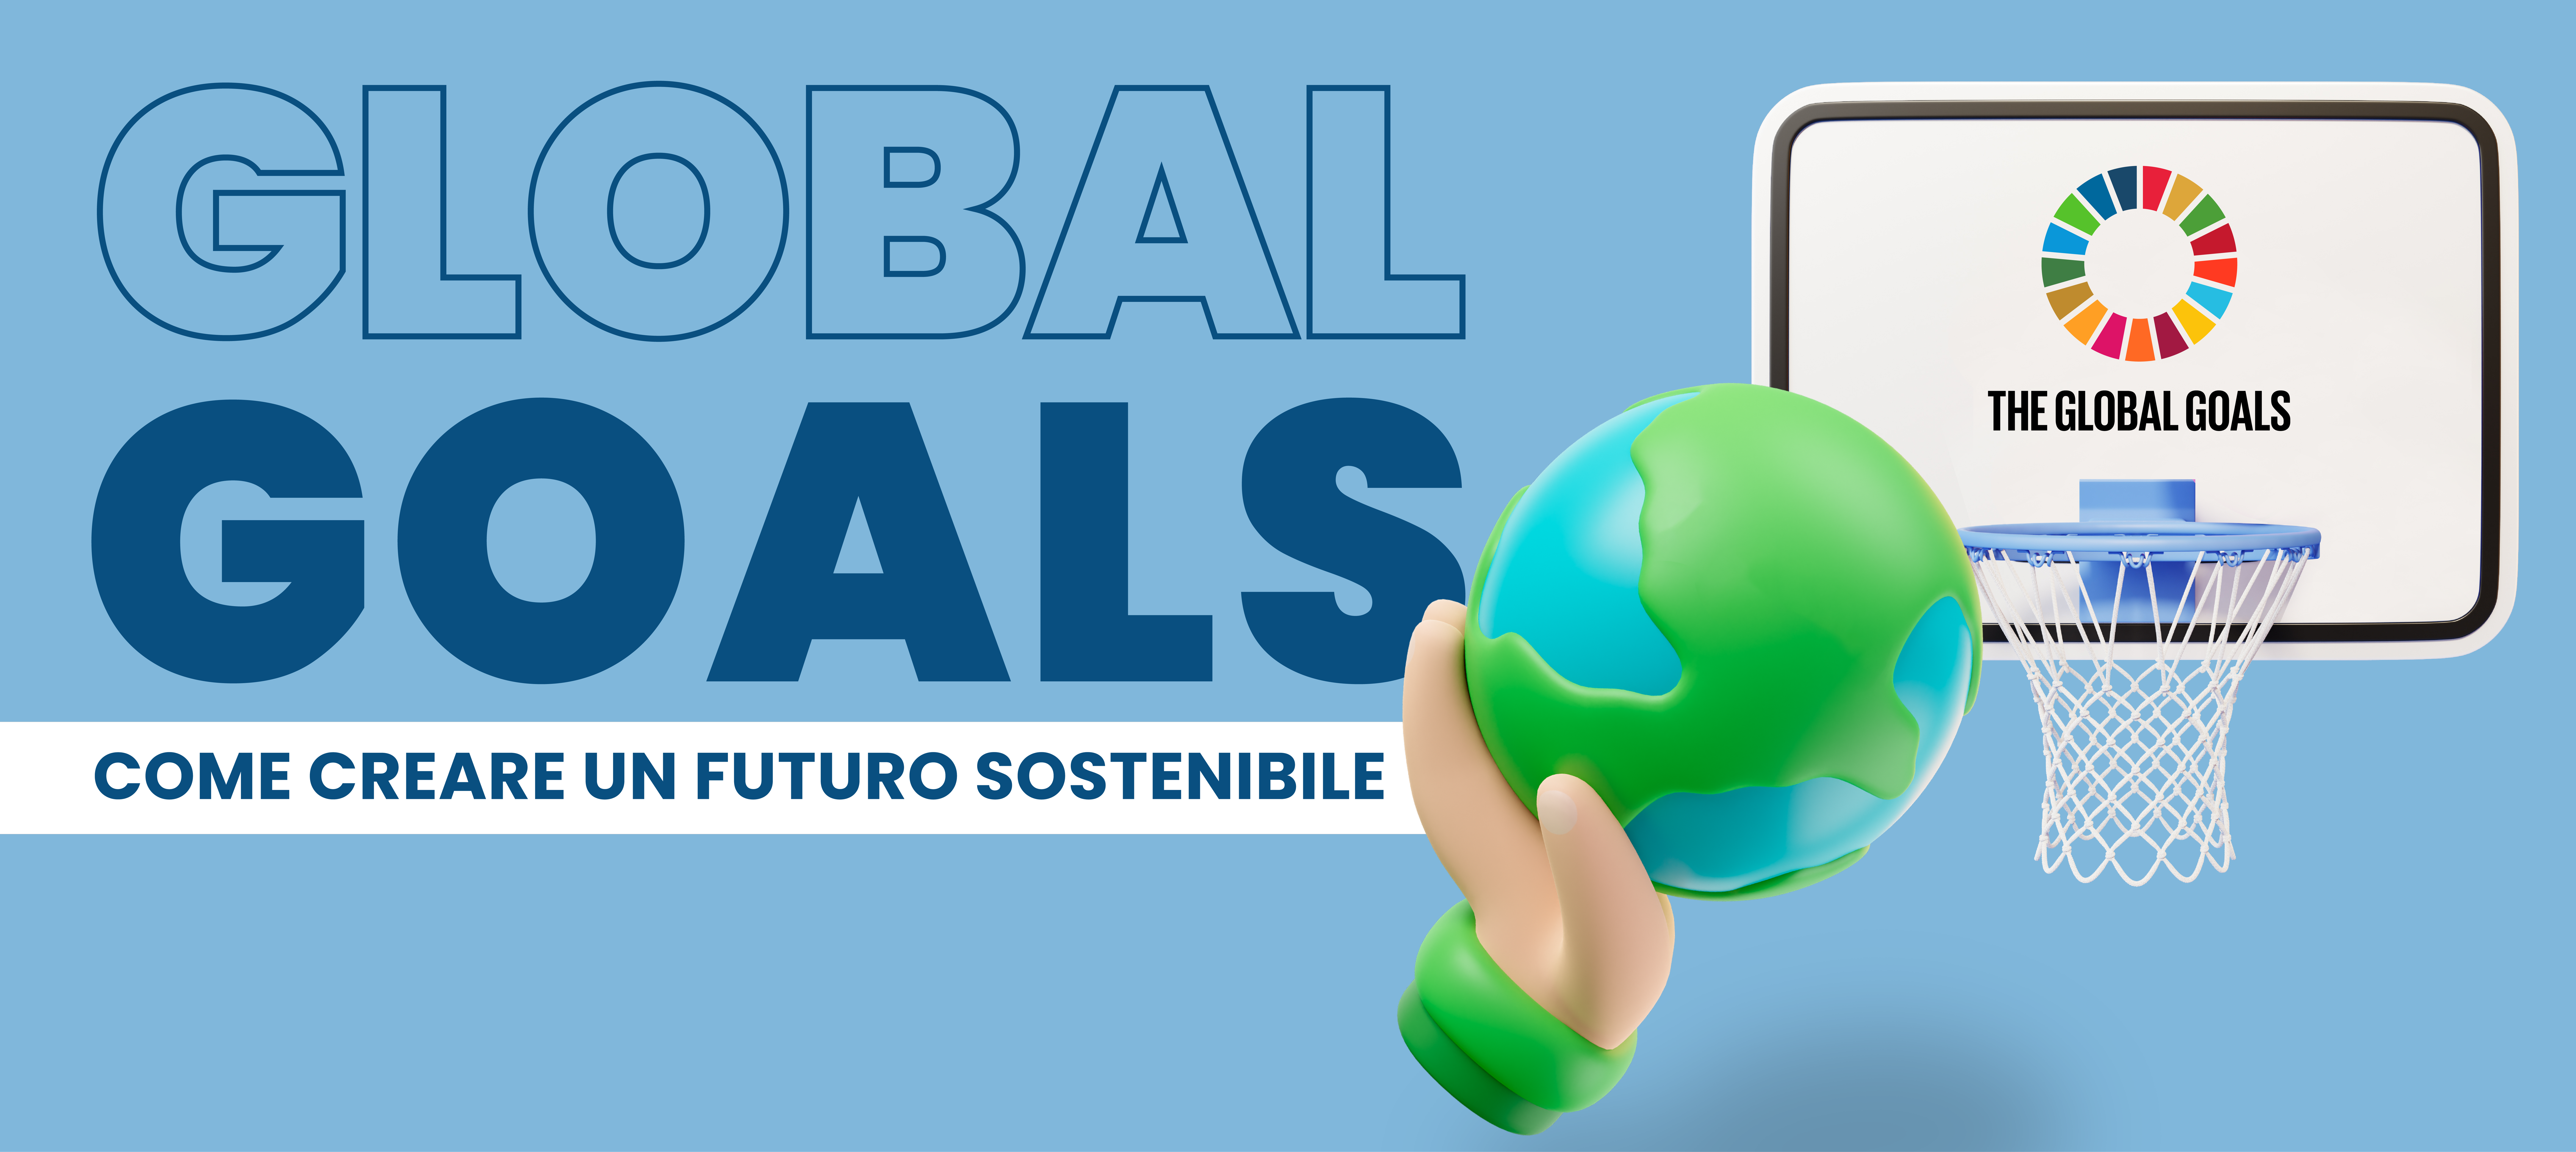 global-goals-sviluppo sostenibile-articolo